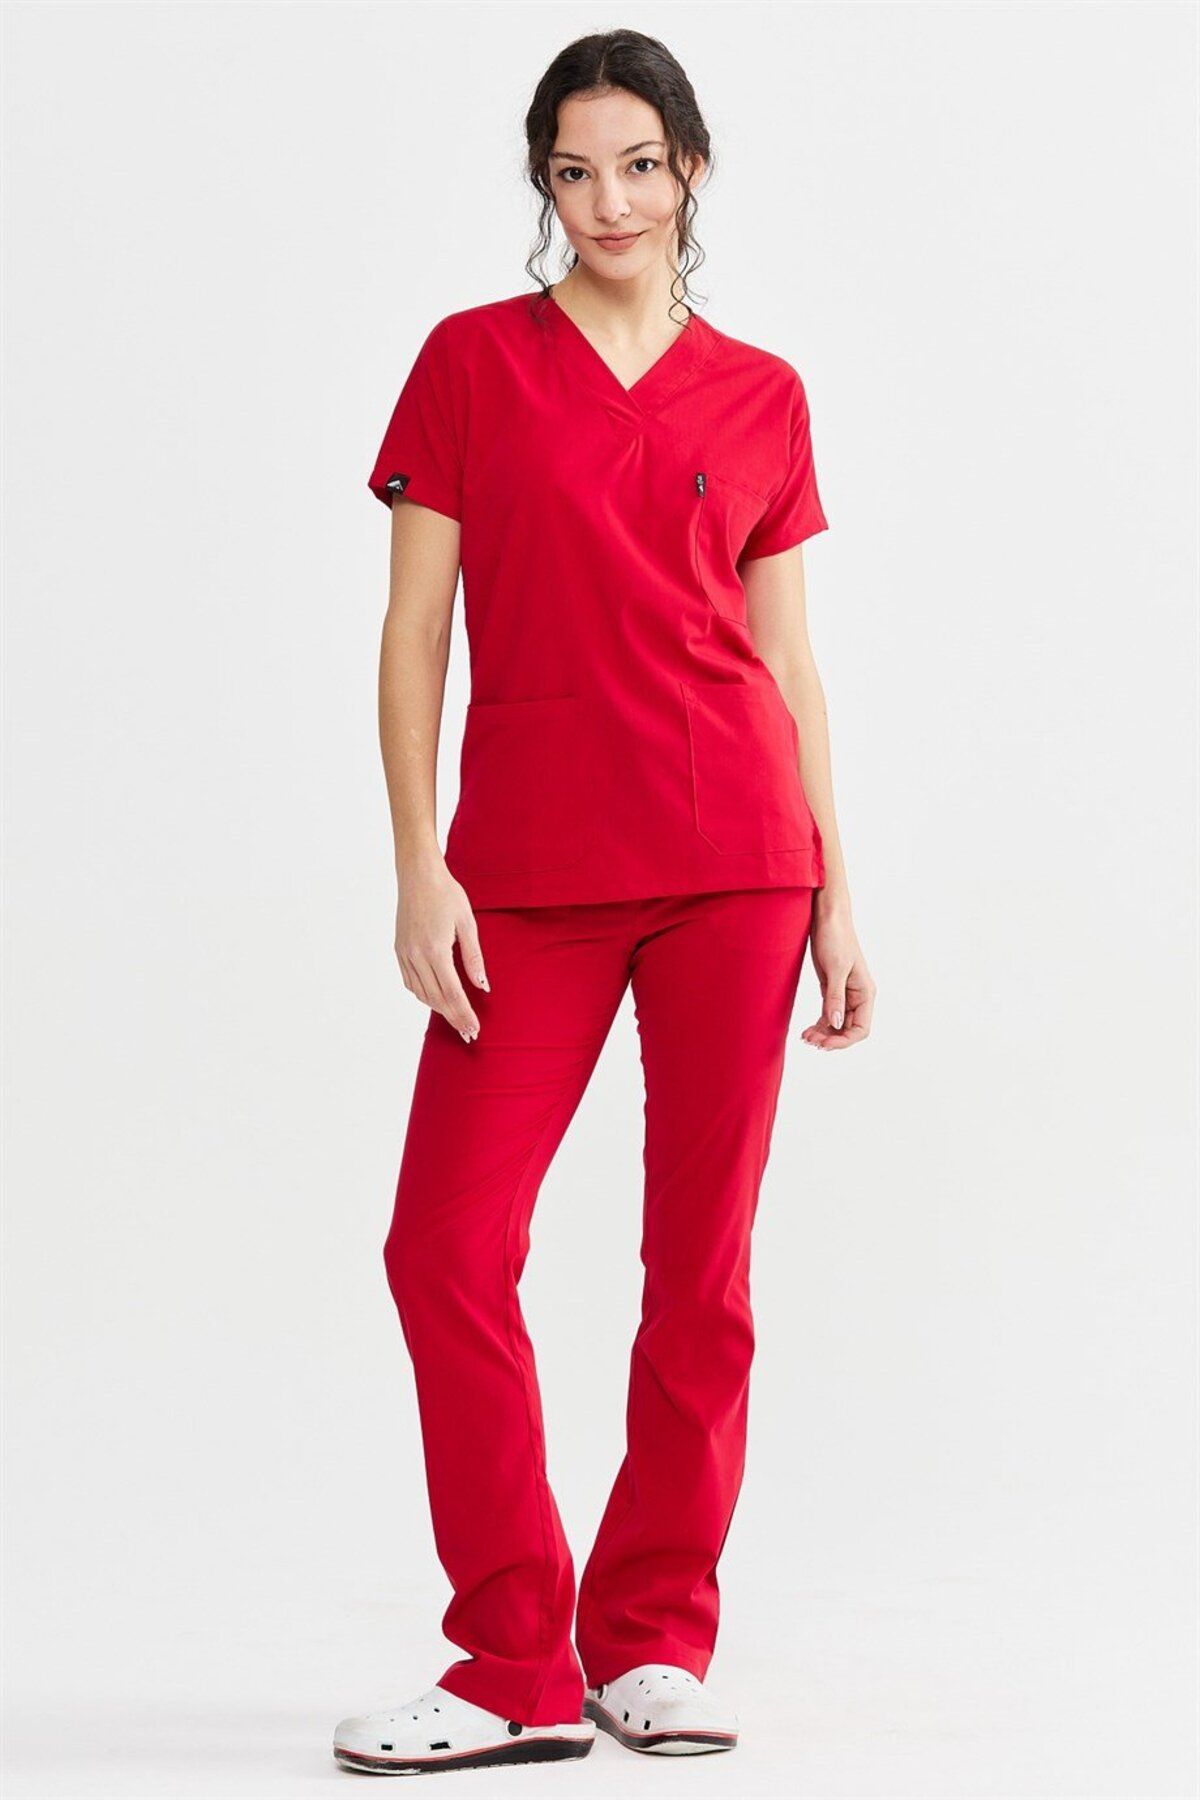 Çatı Medikal Ultralycra Spaniard - Likralı Doktor Hemşire Forma Takımı (KADIN), Kırmızı